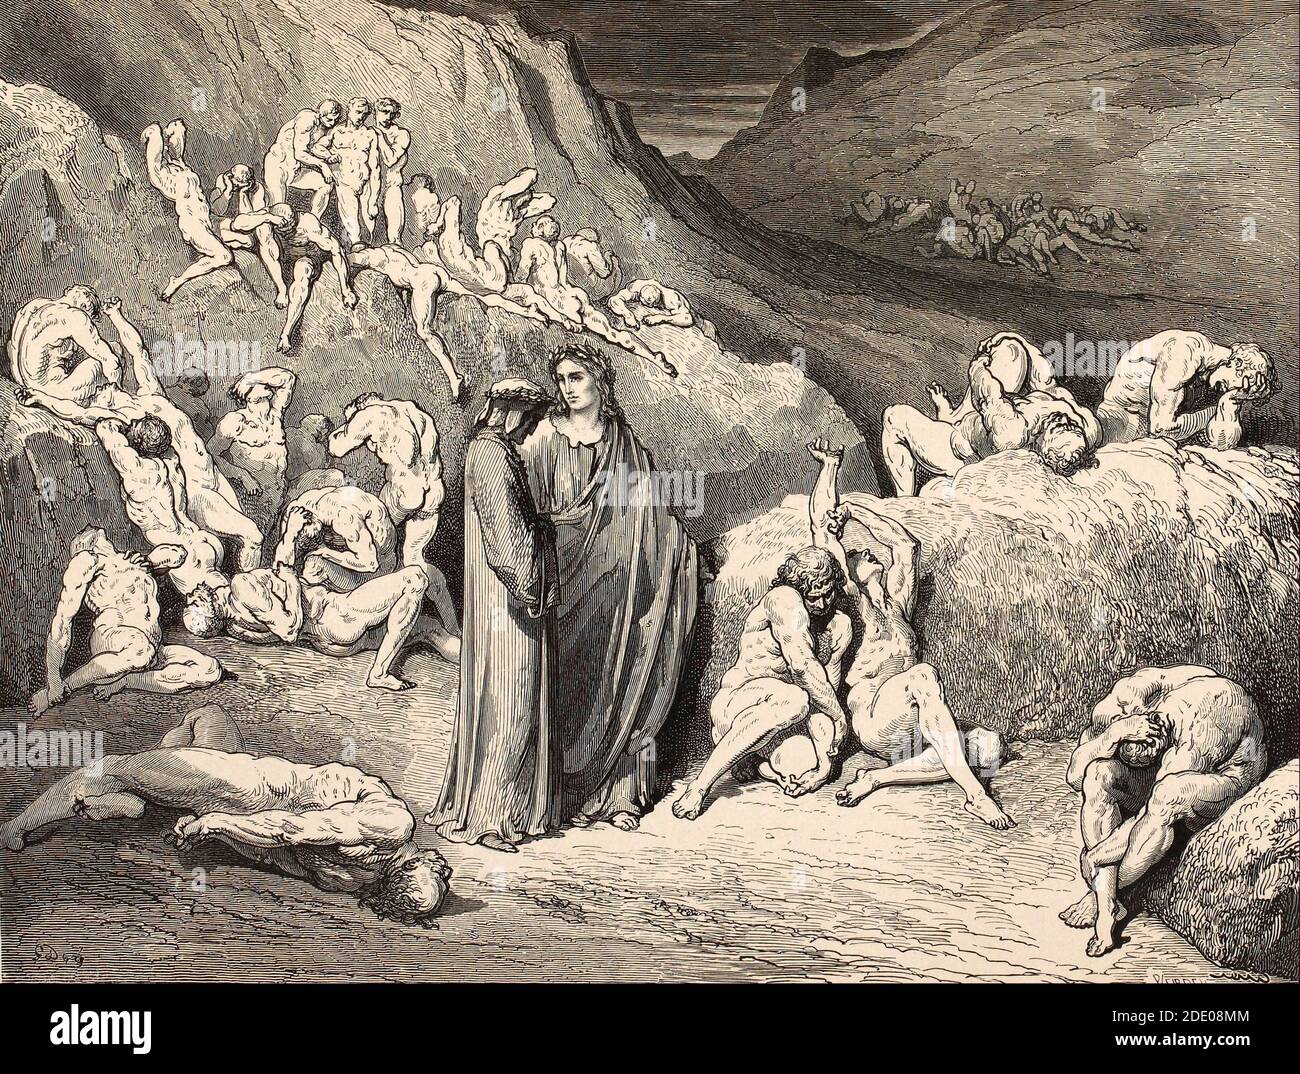 Dante Divina Commedia - Inferno - XXIX canto - Virgilio E Dante incontra i contraffattori - VIII cerchio - illustrazione Di Gustave Dorè Foto Stock